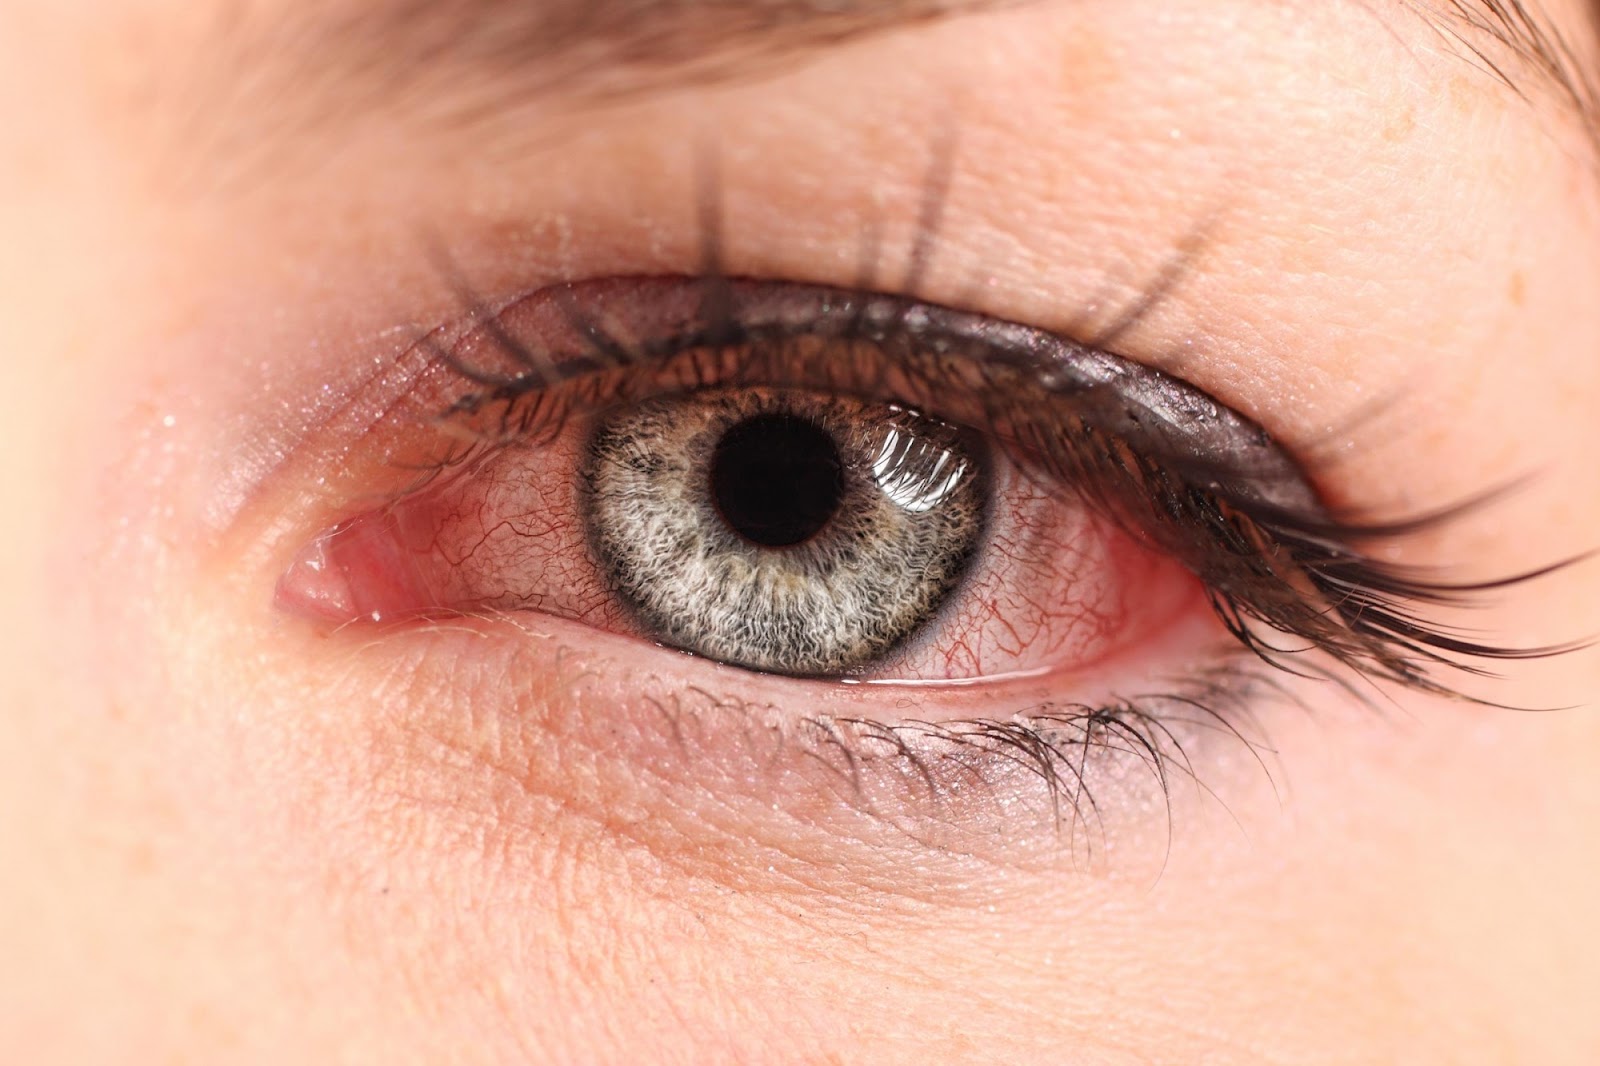 Tác dụng phụ của thuốc nhỏ mắt Vigamox là có thể gây kích ứng mắt